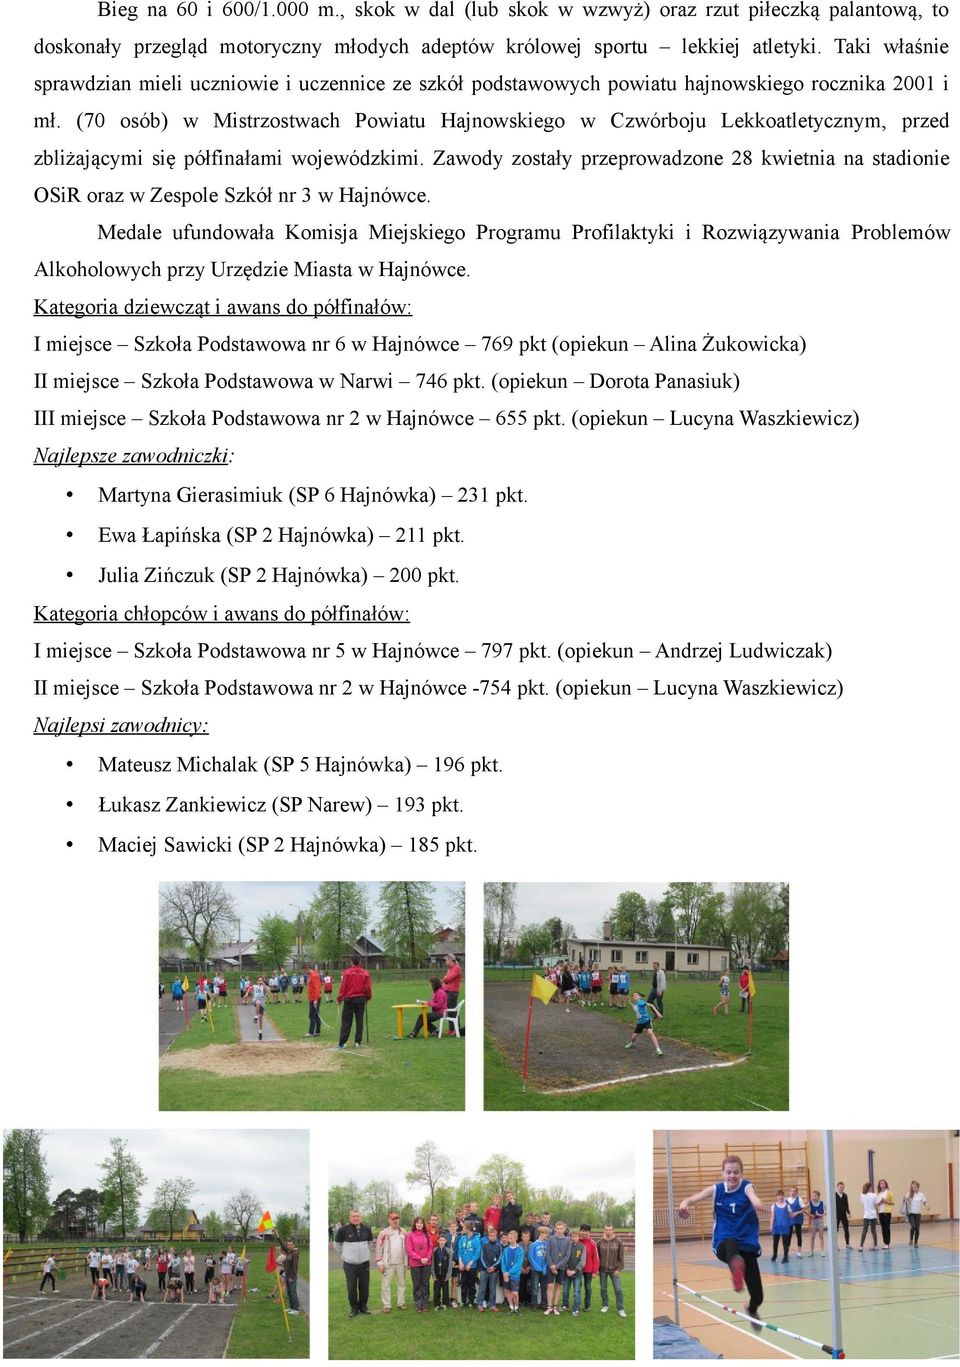 (70 osób) w Mistrzostwach Powiatu Hajnowskiego w Czwórboju Lekkoatletycznym, przed zbliżającymi się półfinałami wojewódzkimi.